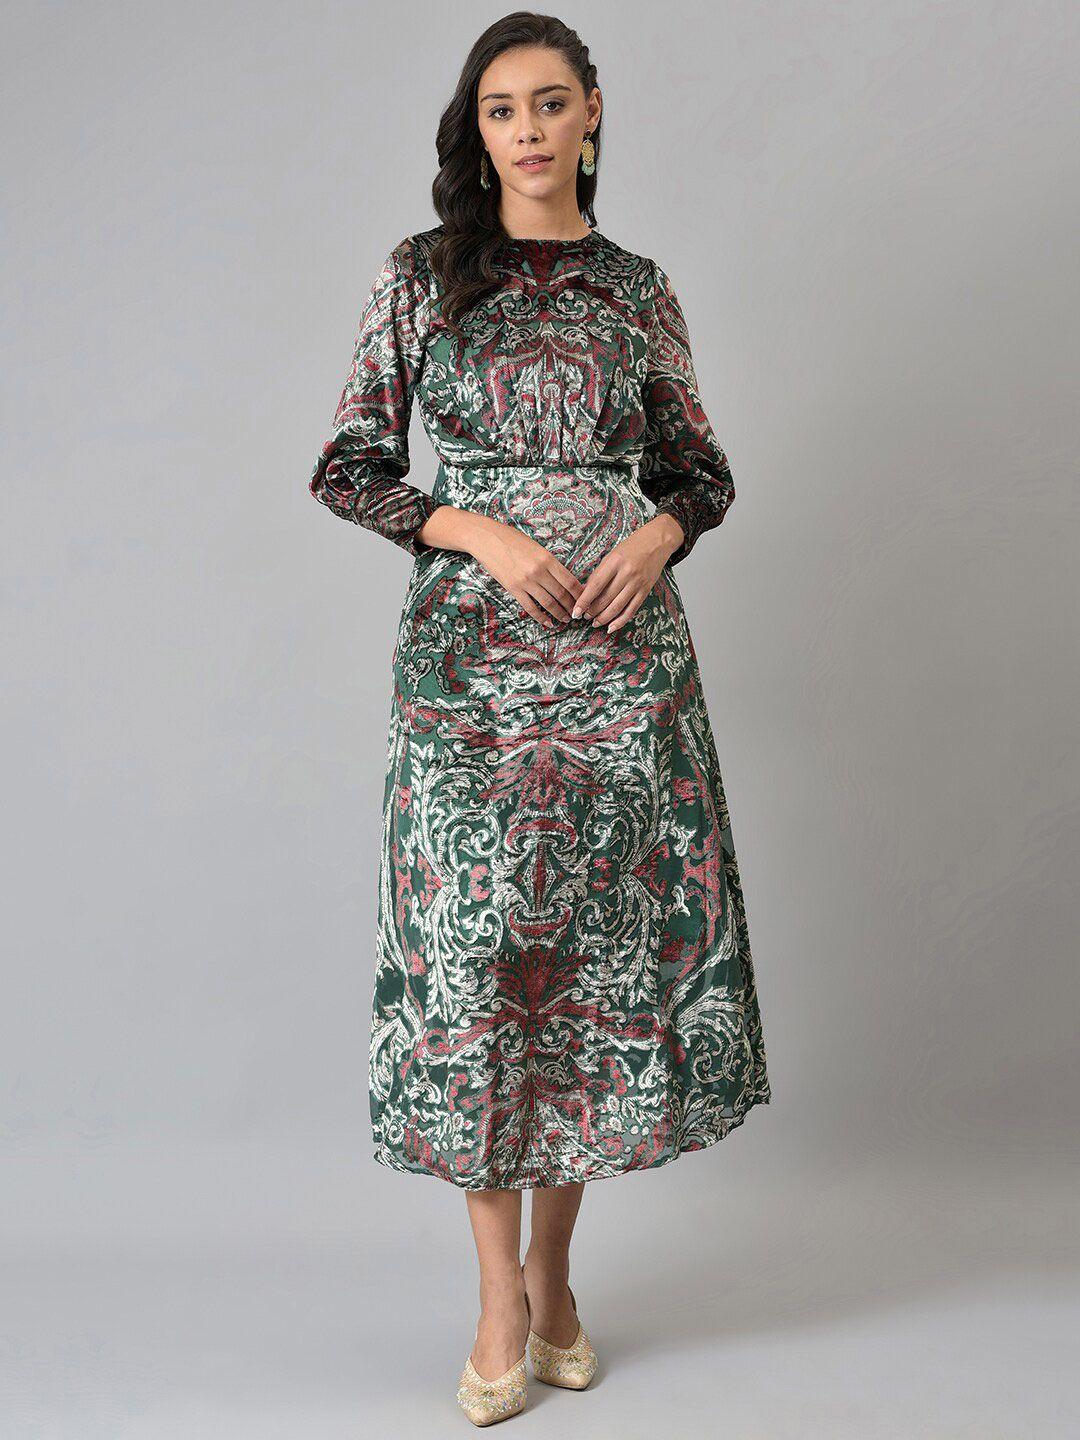 wishful-green-&-maroon-ethnic-motifs-chiffon-a-line-midi-dress